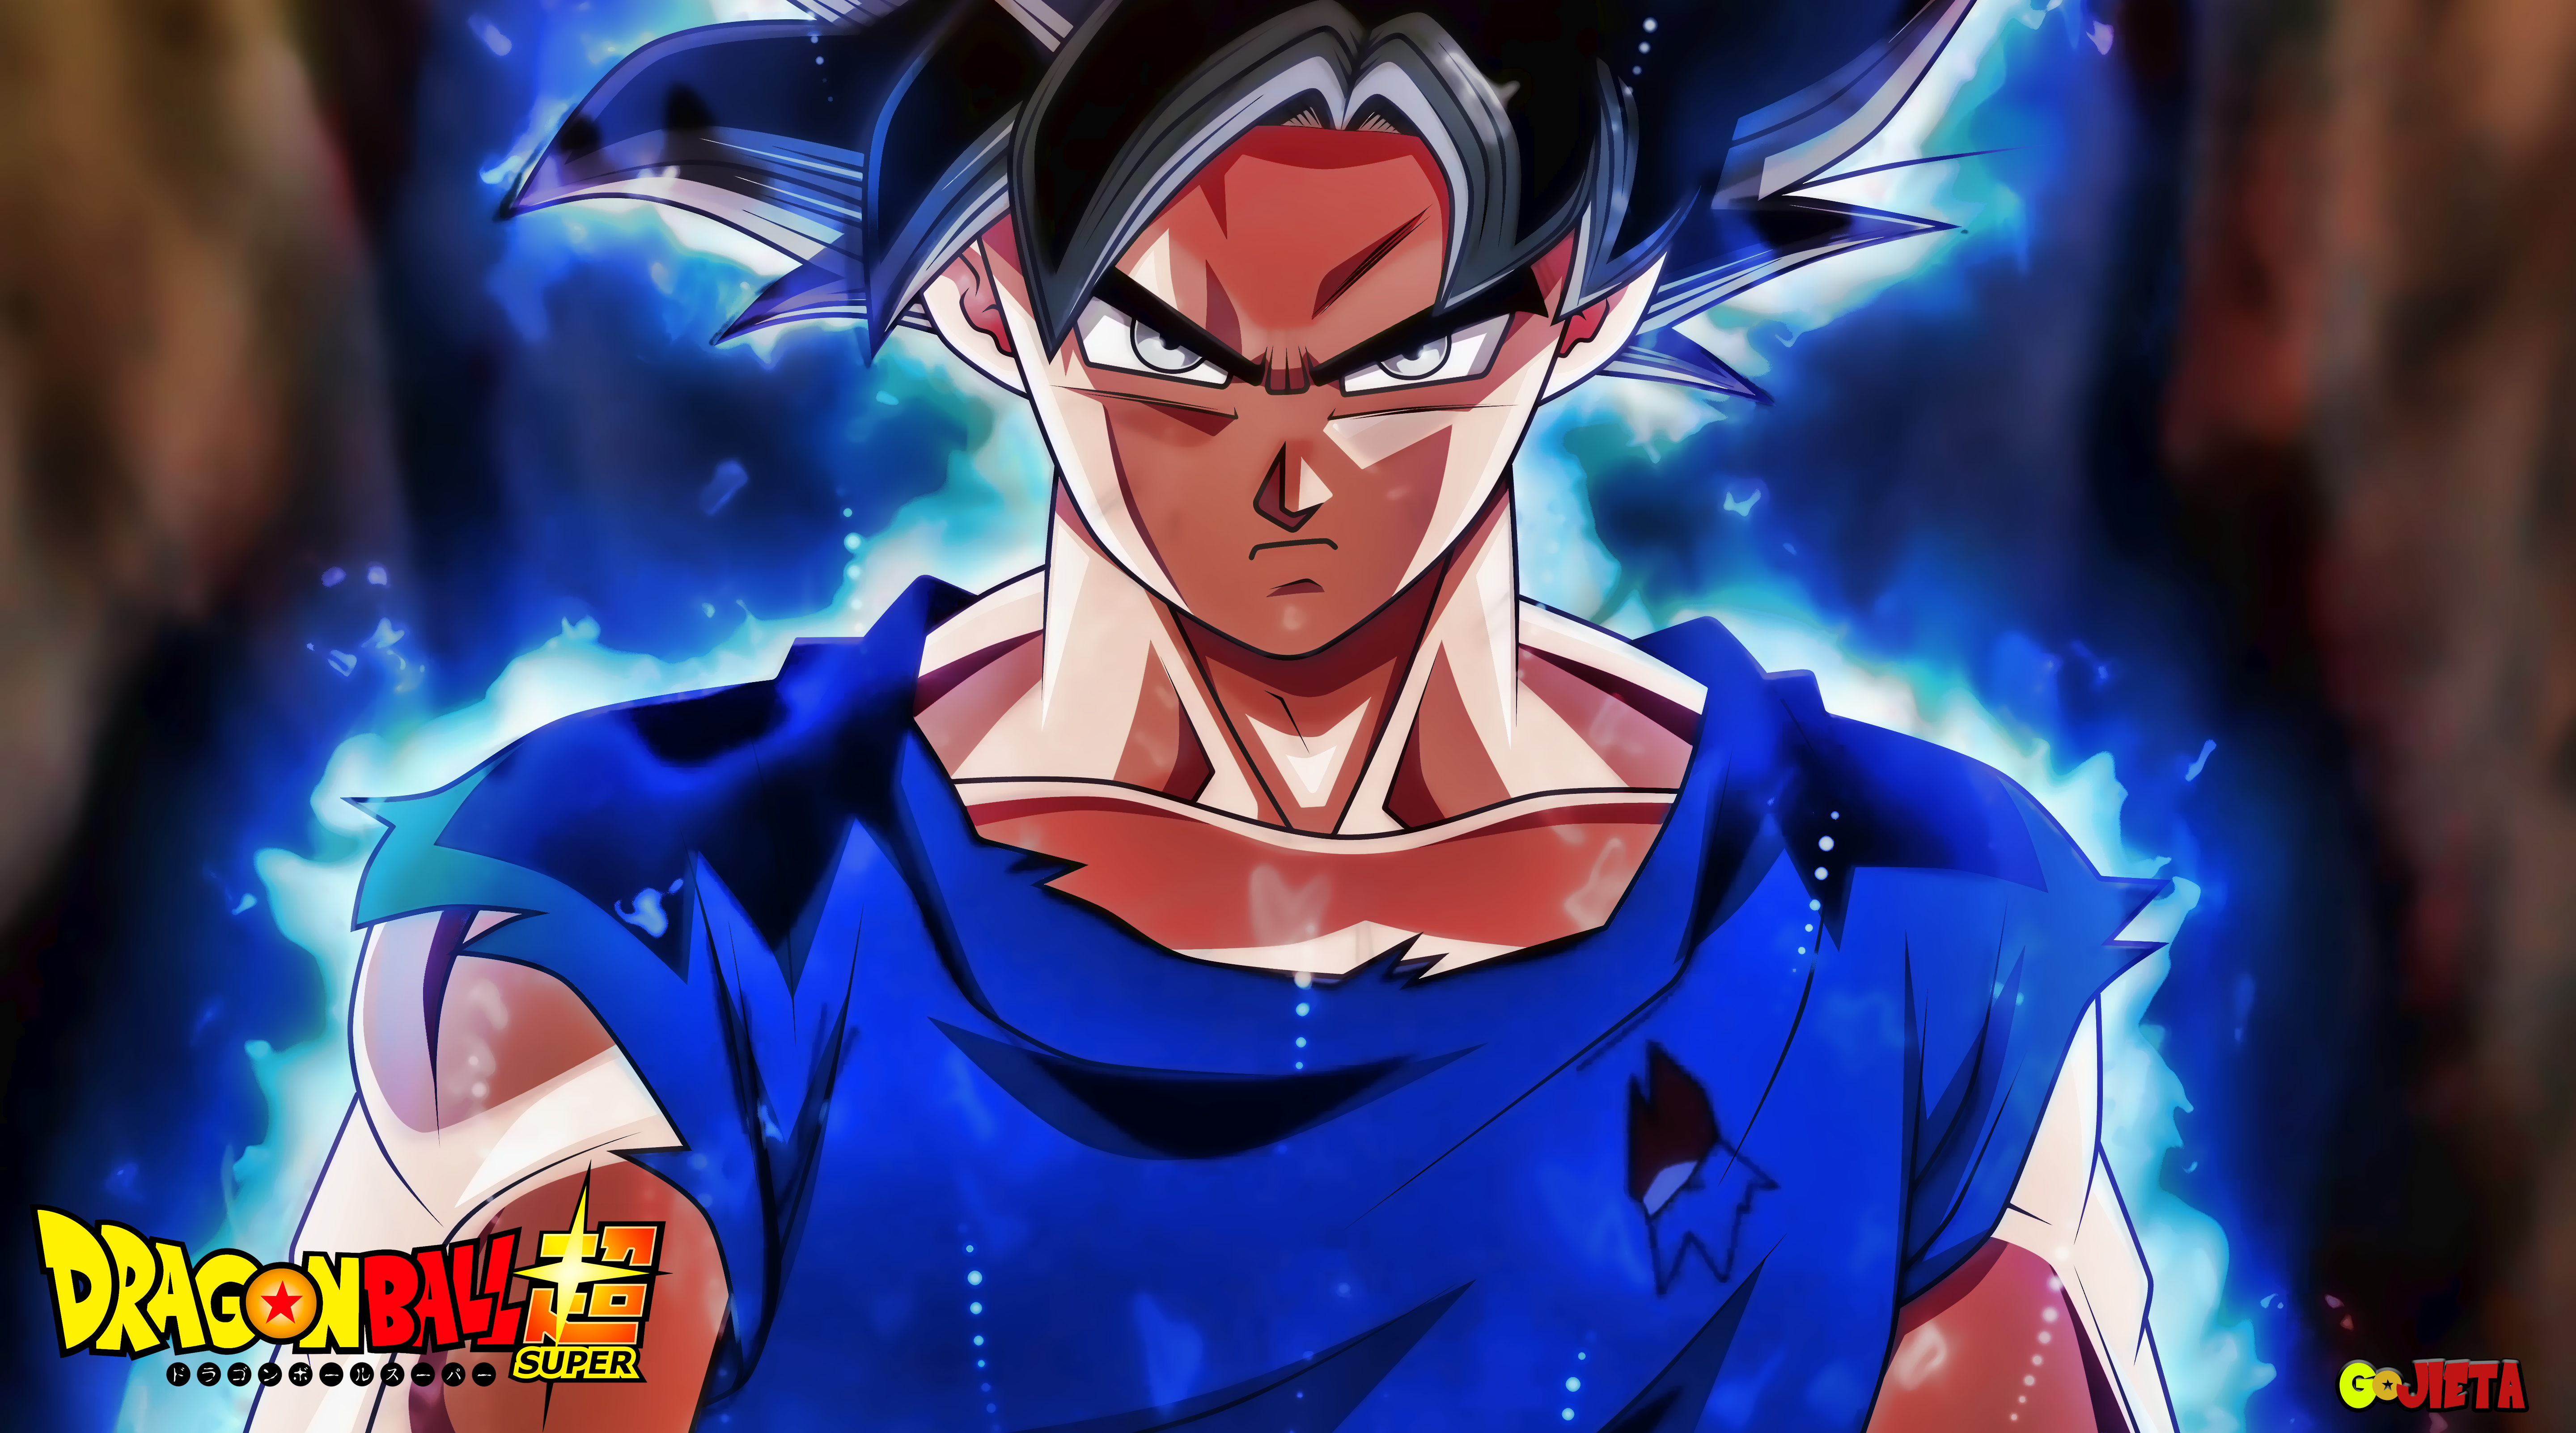 Goku ultra instinct form DBS by RonnieGFX 5760x3204